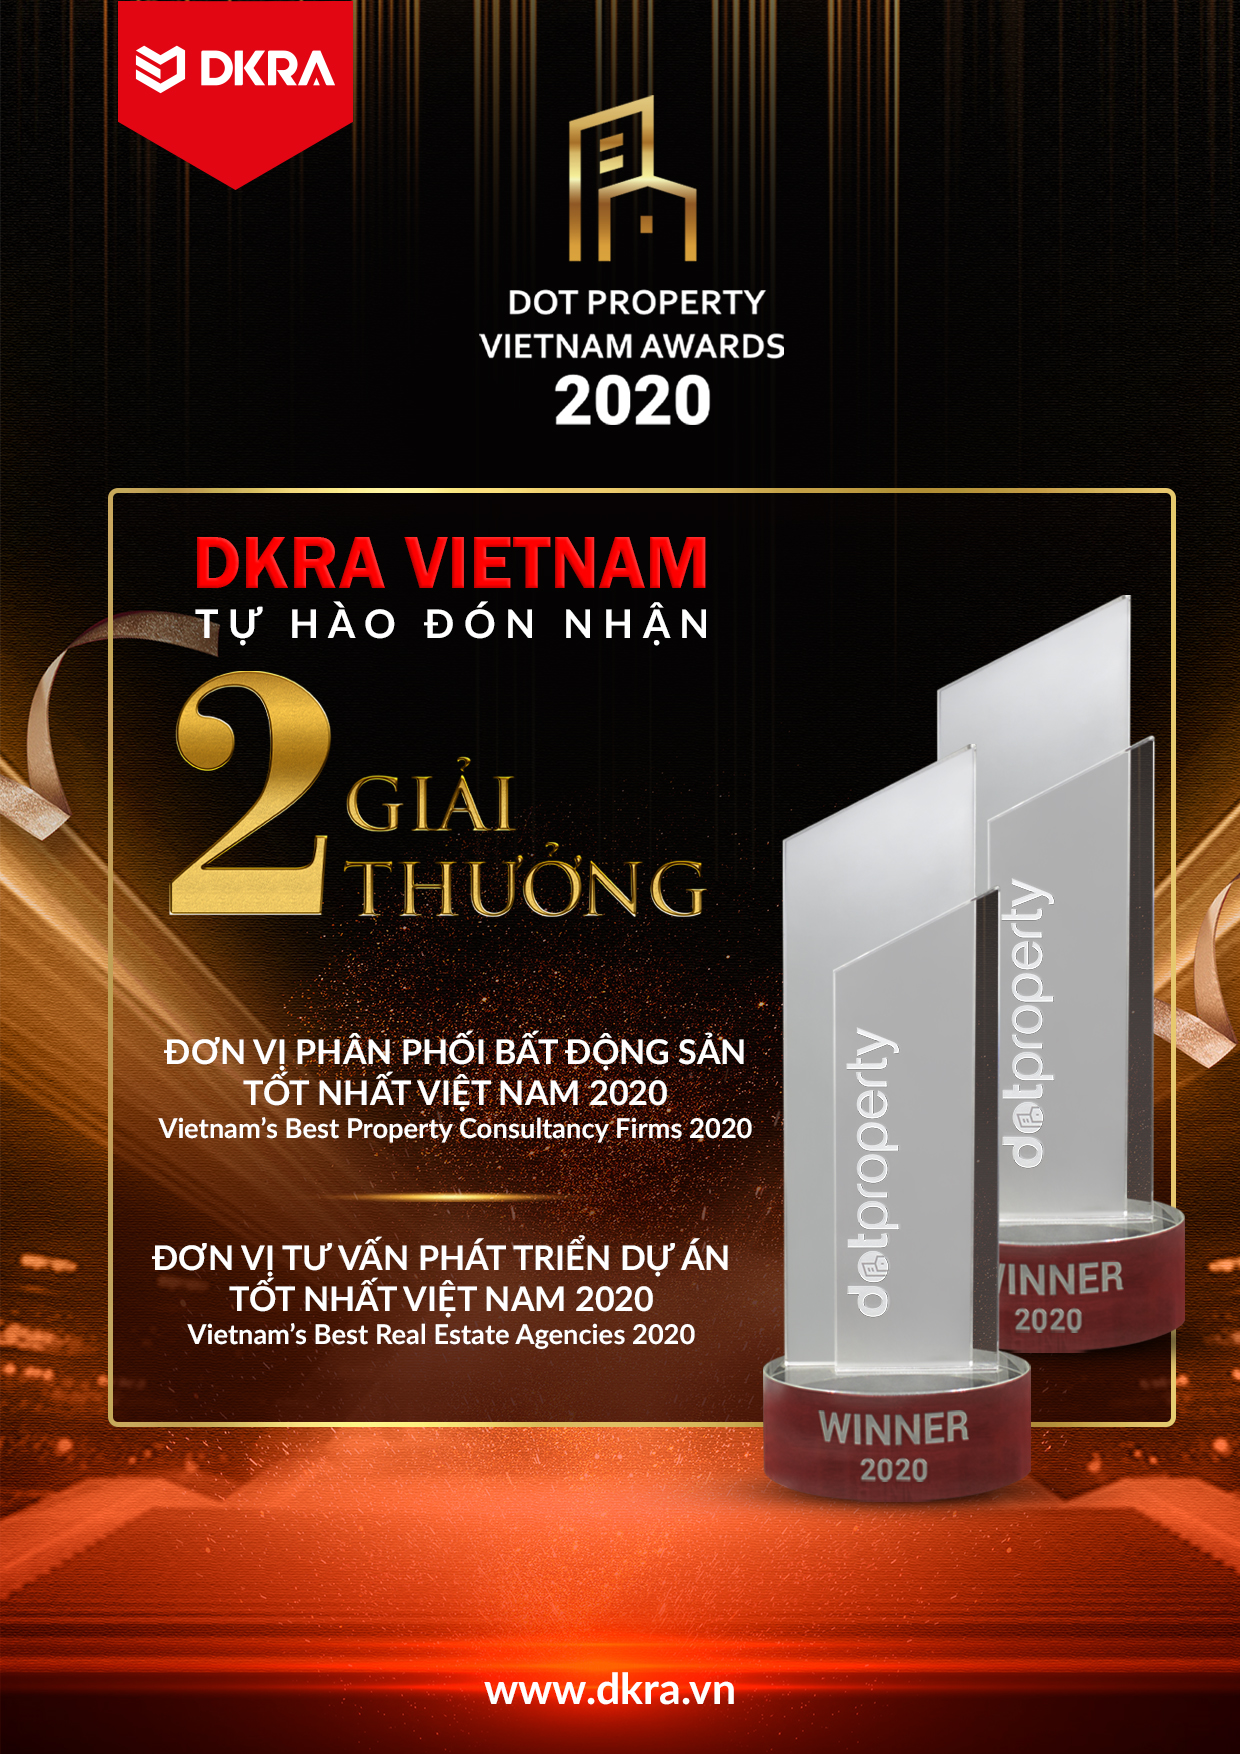 DKRA VIETNAM GIỮ VỮNG PHONG ĐỘ VÀ BỨT PHÁ VỚI “CÚ ĐÚP” GIẢI THƯỞNG DOT PROPERTY VIETNAM AWARDS 2020